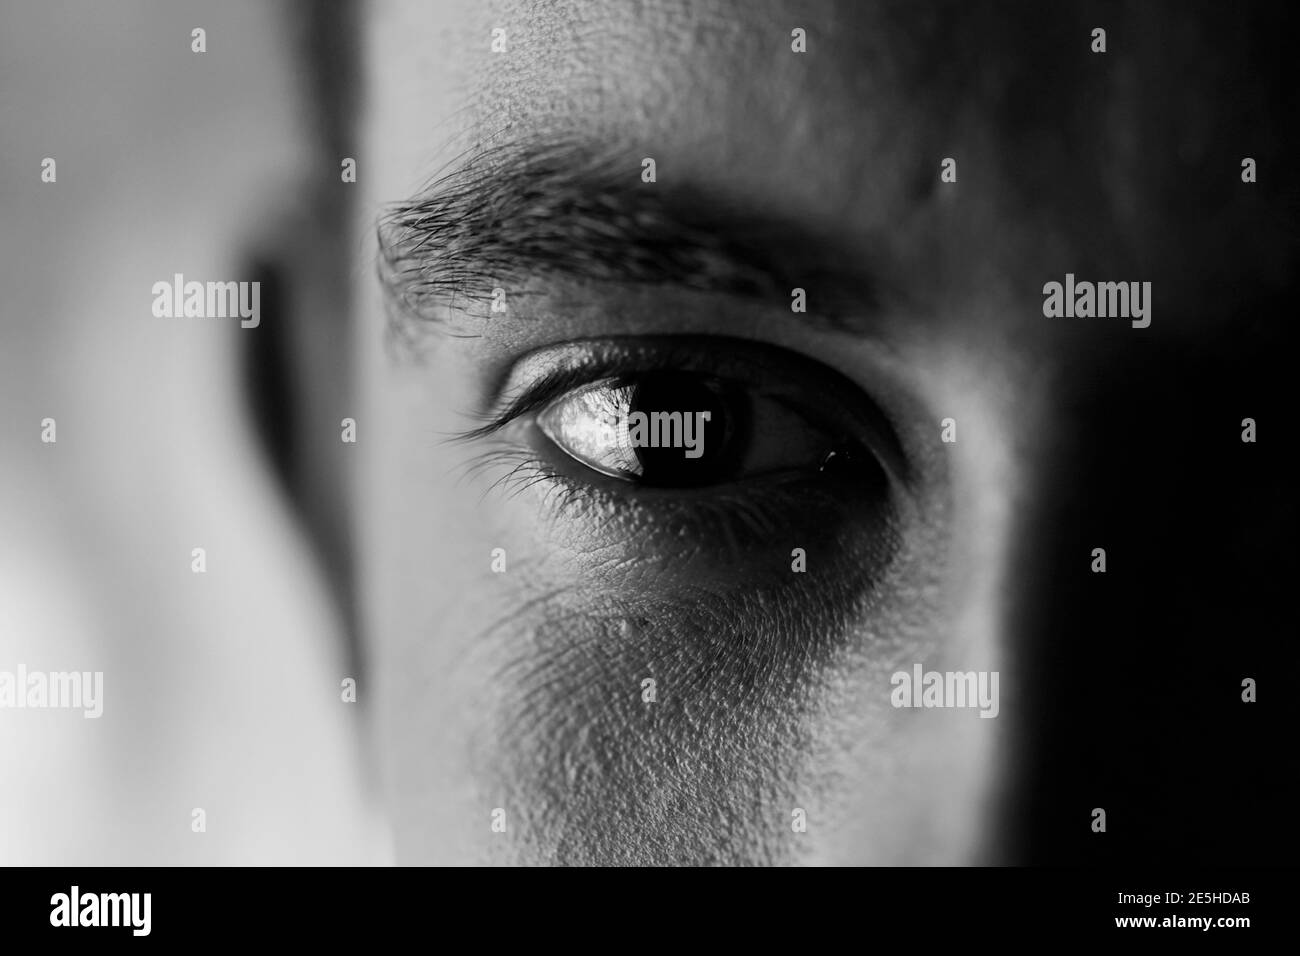 Ausdrucksstarke Optik - Nahaufnahme eines traurig und leer aussehenden Auges, kontrastreiche Schwarz-Weiß-Aufnahme Stockfoto